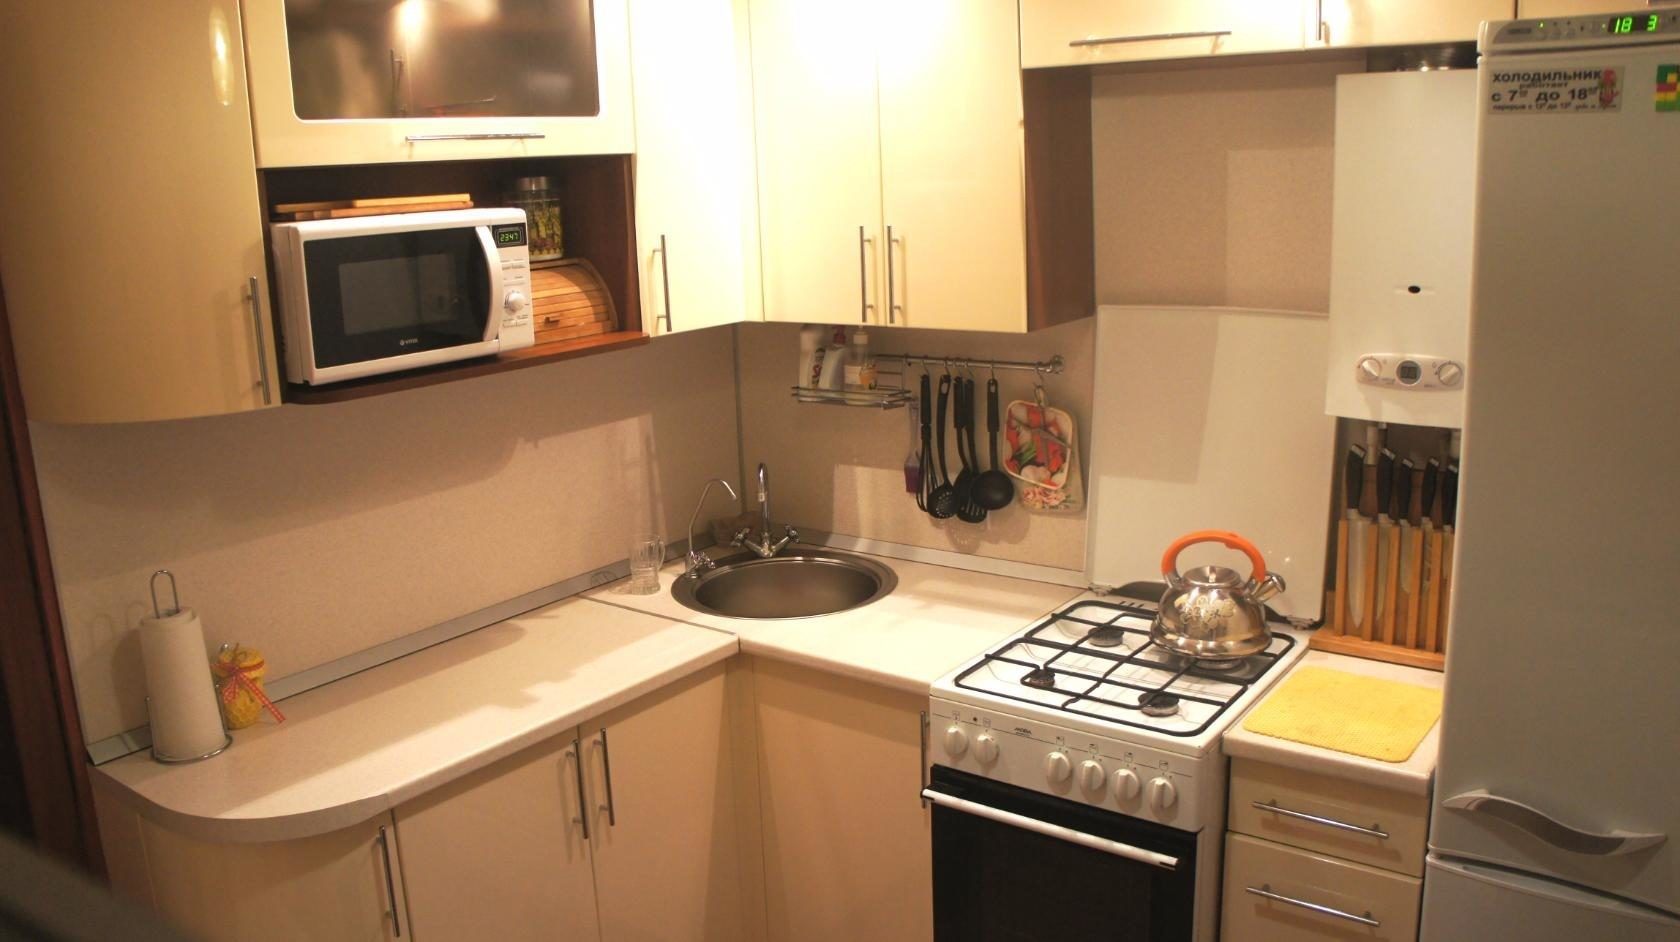 Кухня в хрущевке 5 кв м с холодильником и газовой плитой дизайн фото